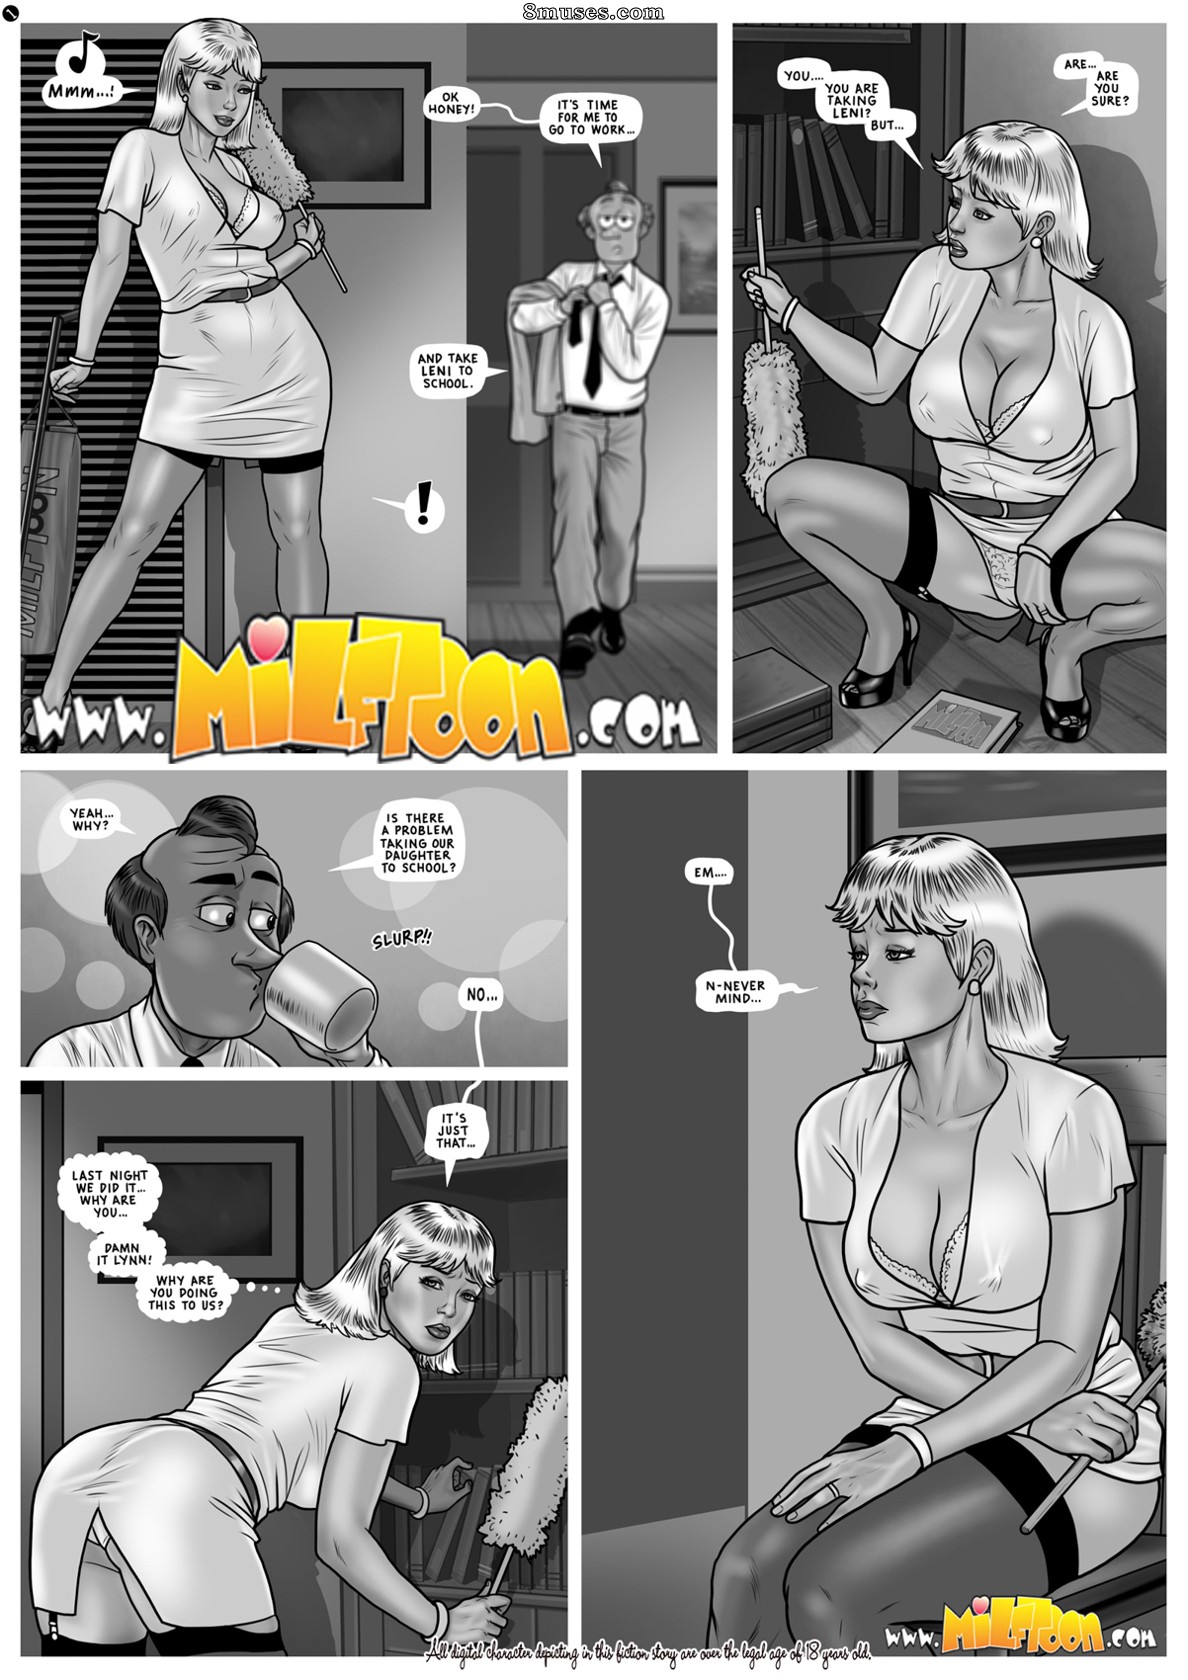 Adult porn archive comic stripes